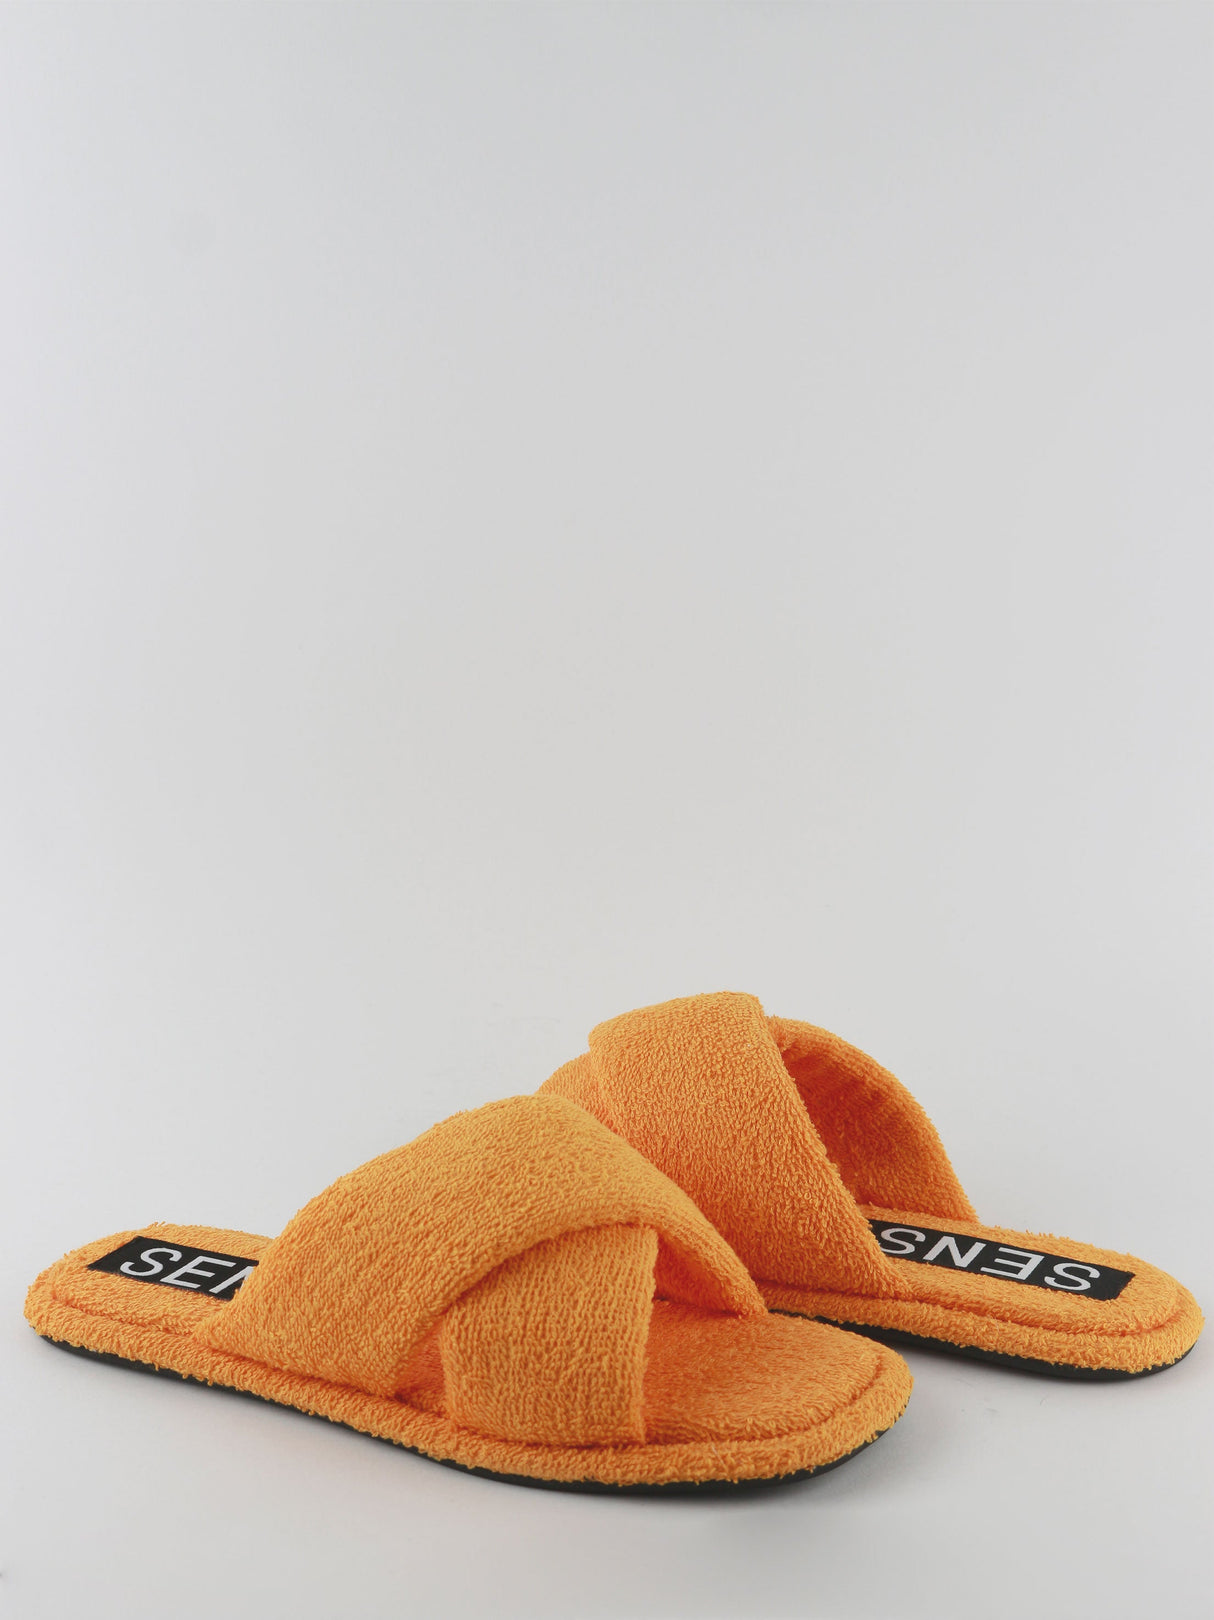 Women's Open Toe Slippers,Orange